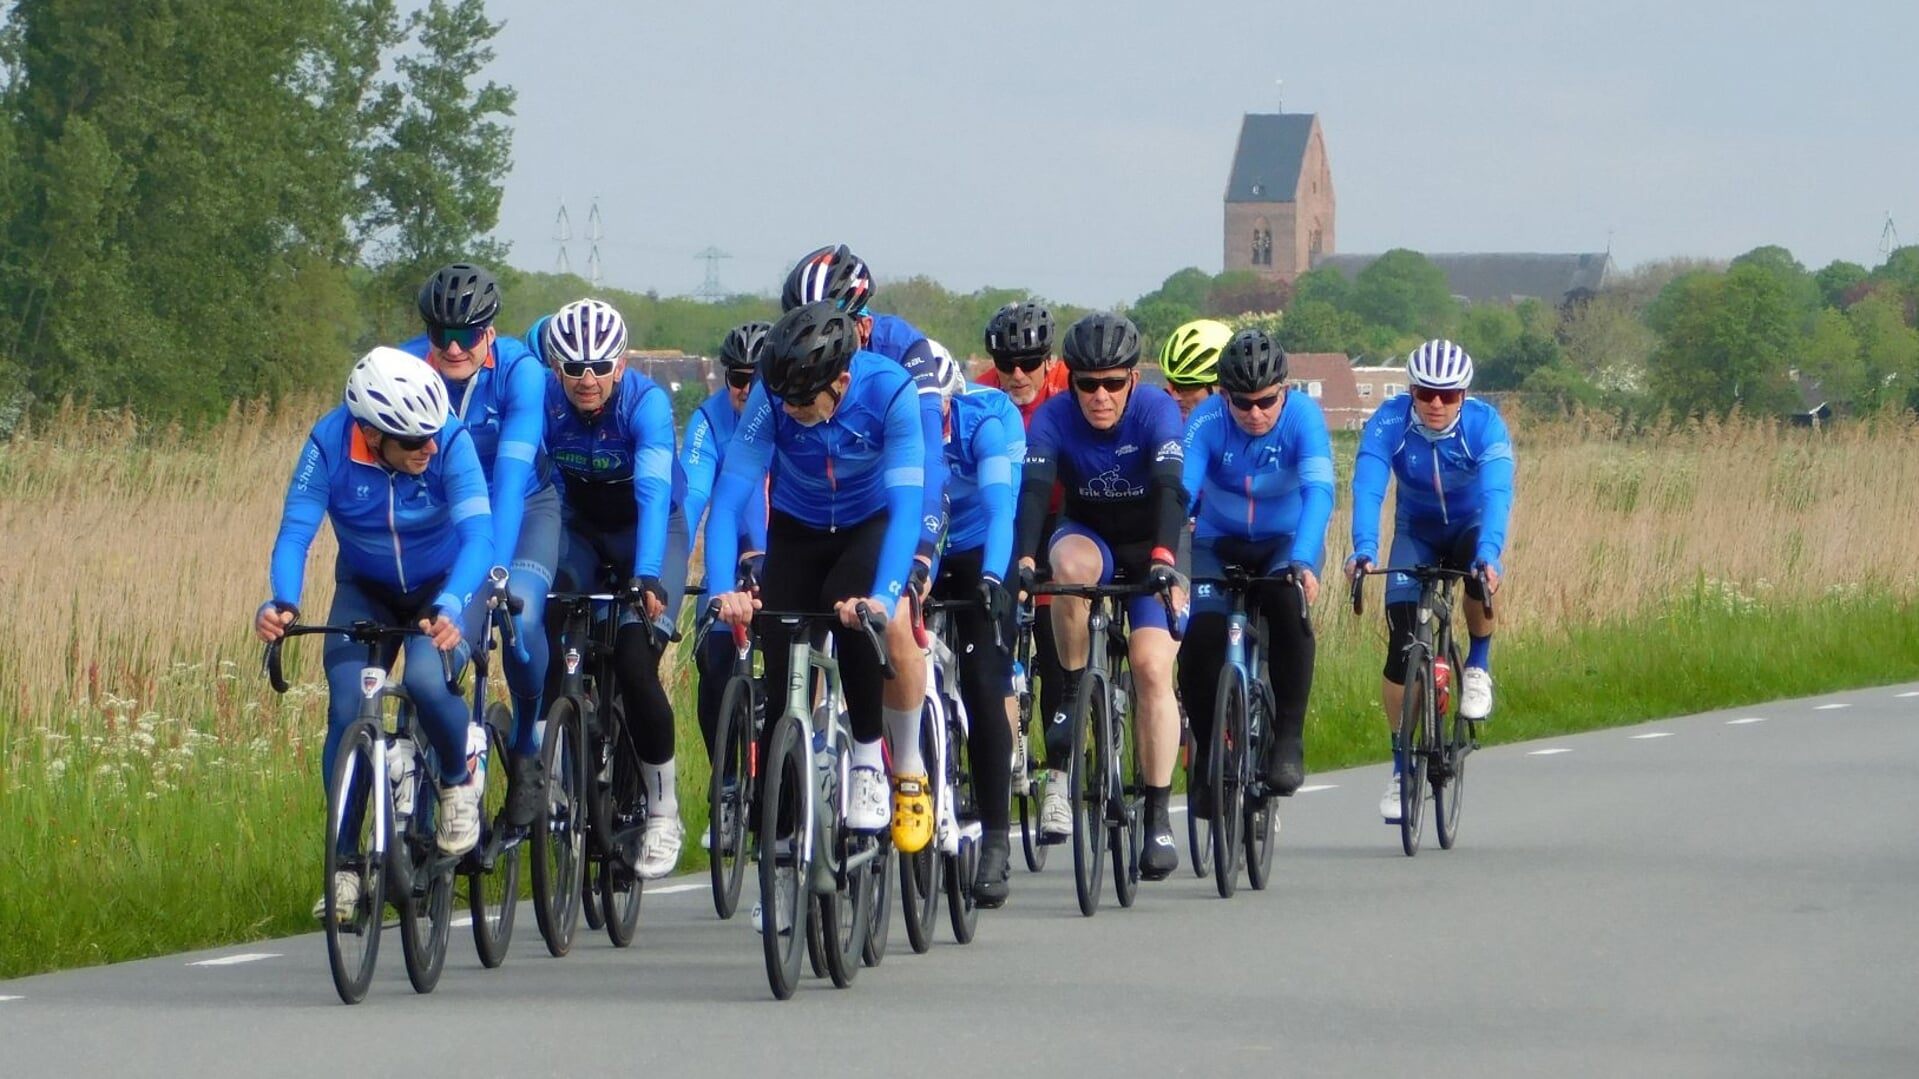 Deelnemers aan de Noorderrondrit op de Fiets nabij Loppersum (foto Maaike de Jong).